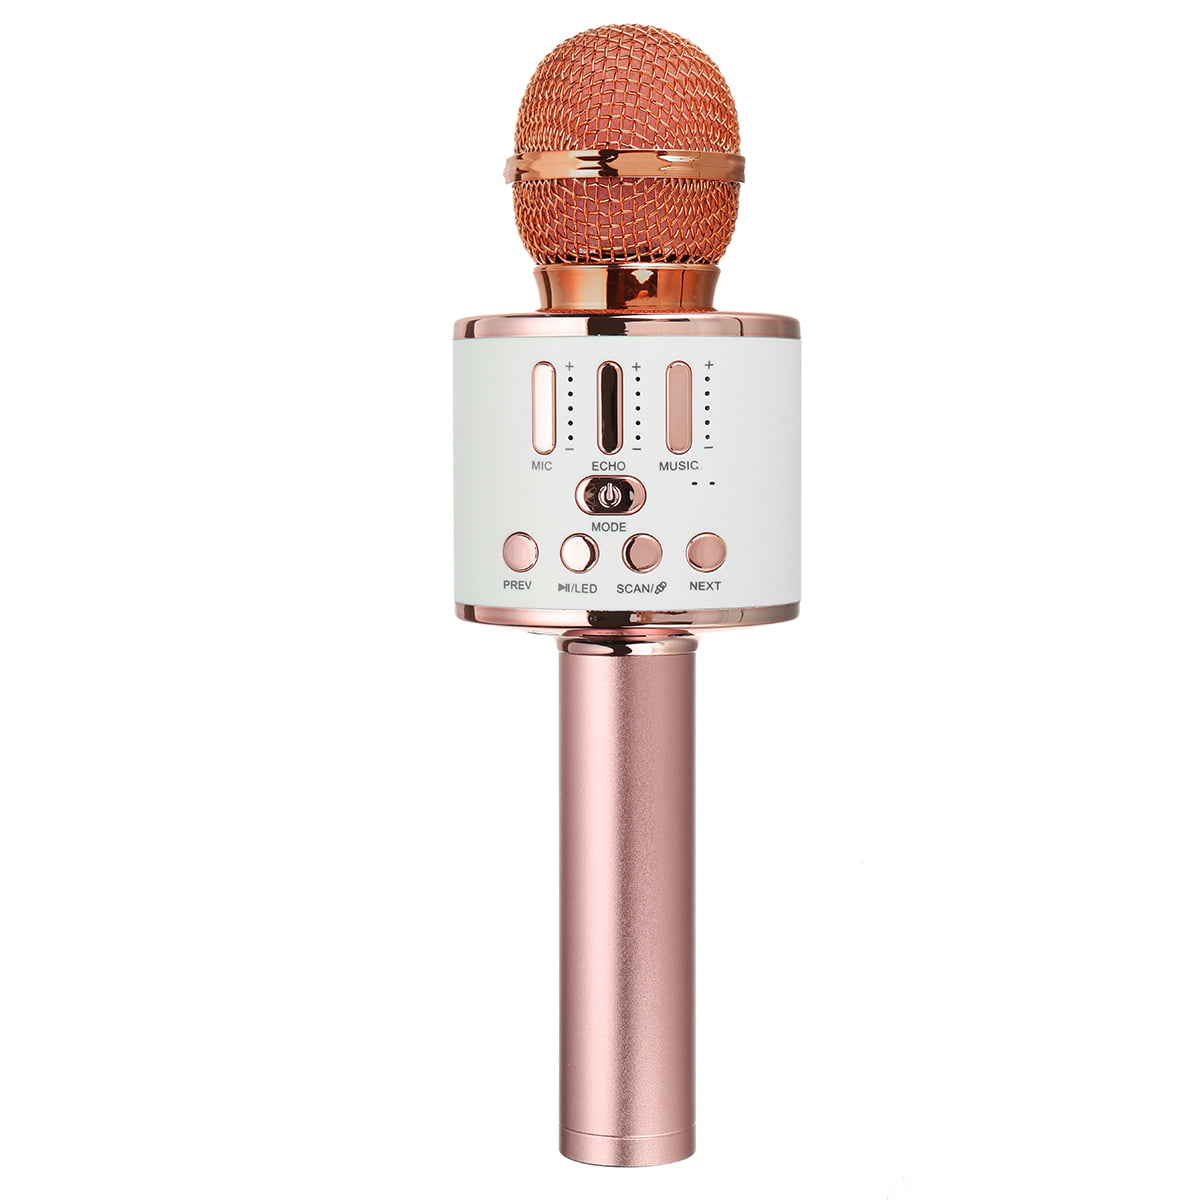 Micrófono inalámbrico Karaoke, 4 en 1 Micrófonos Bluetooth portátiles  Altavoz Karaoke con luces LED de baile, reproductor de KTV doméstico